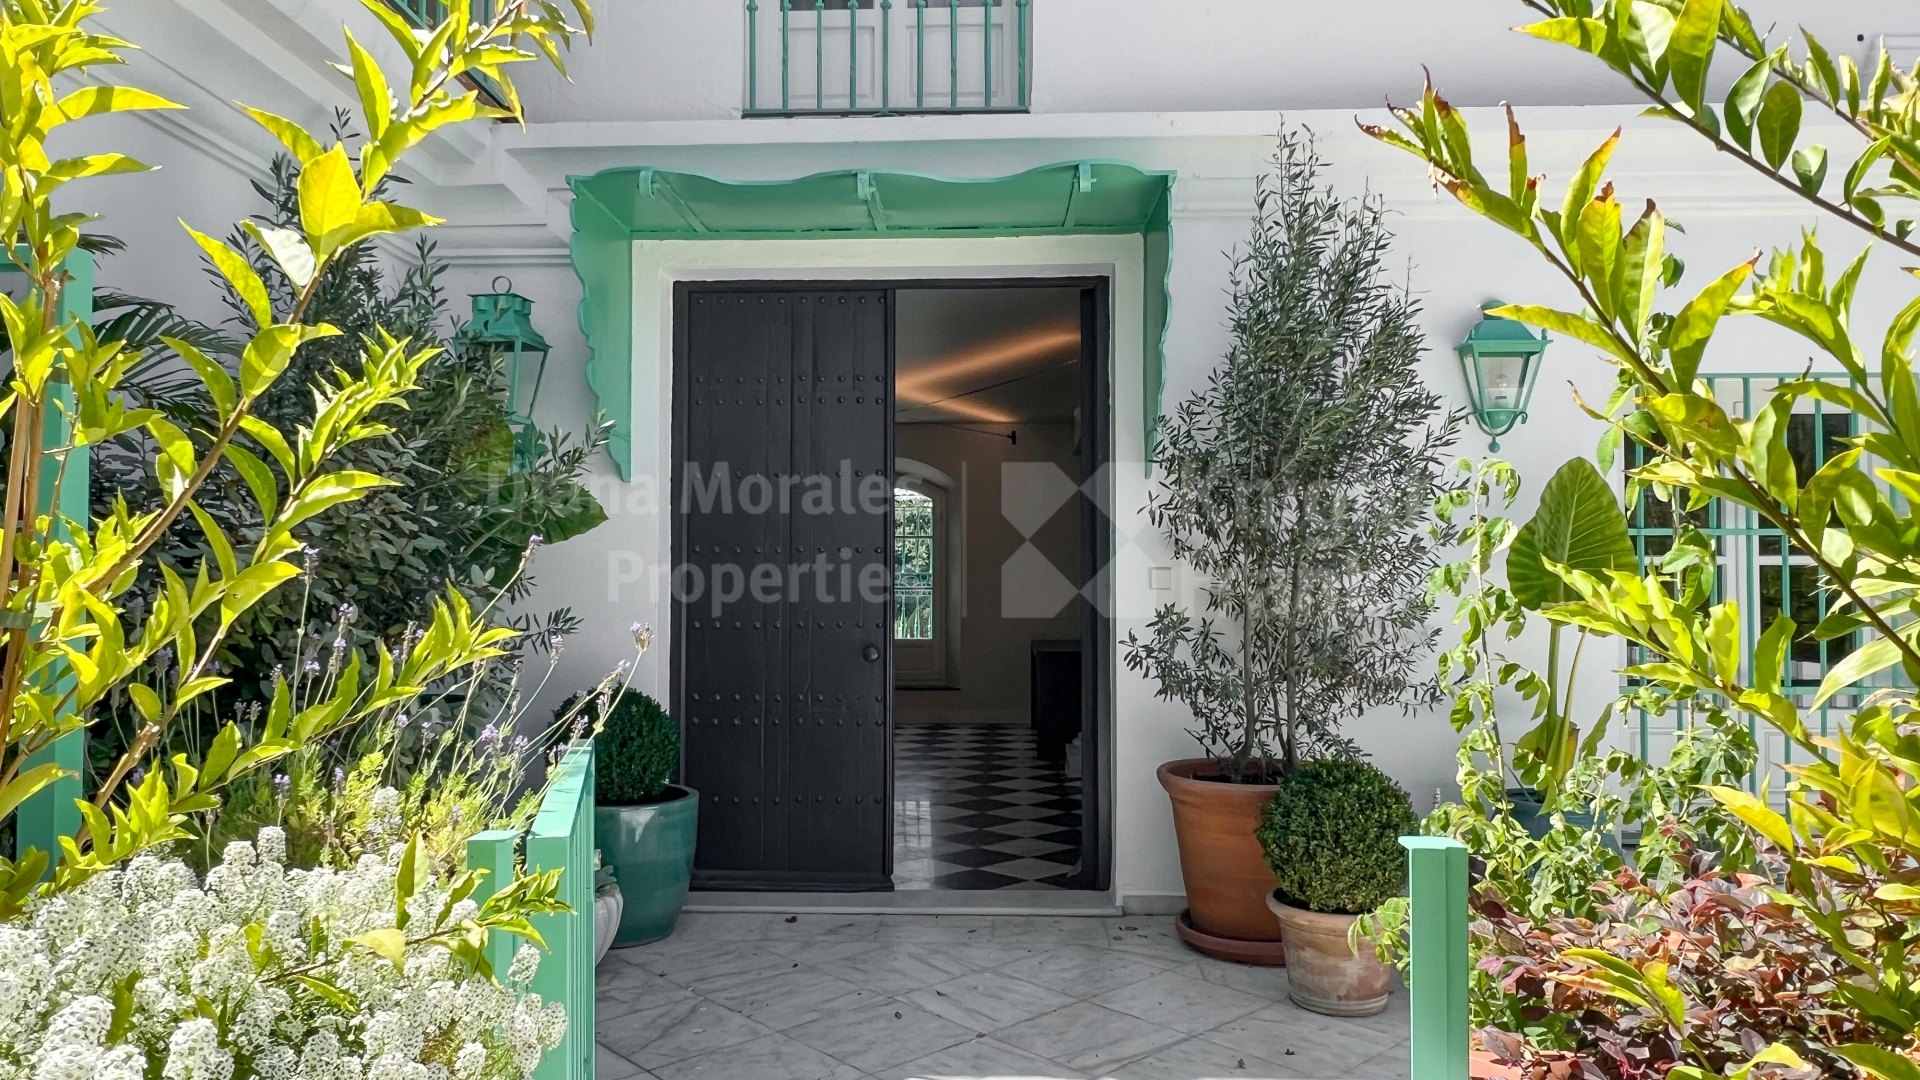 Marbella Centro, Oficinas en alquiler en el corazón de Marbella en el emblemático edificio de Los Portales